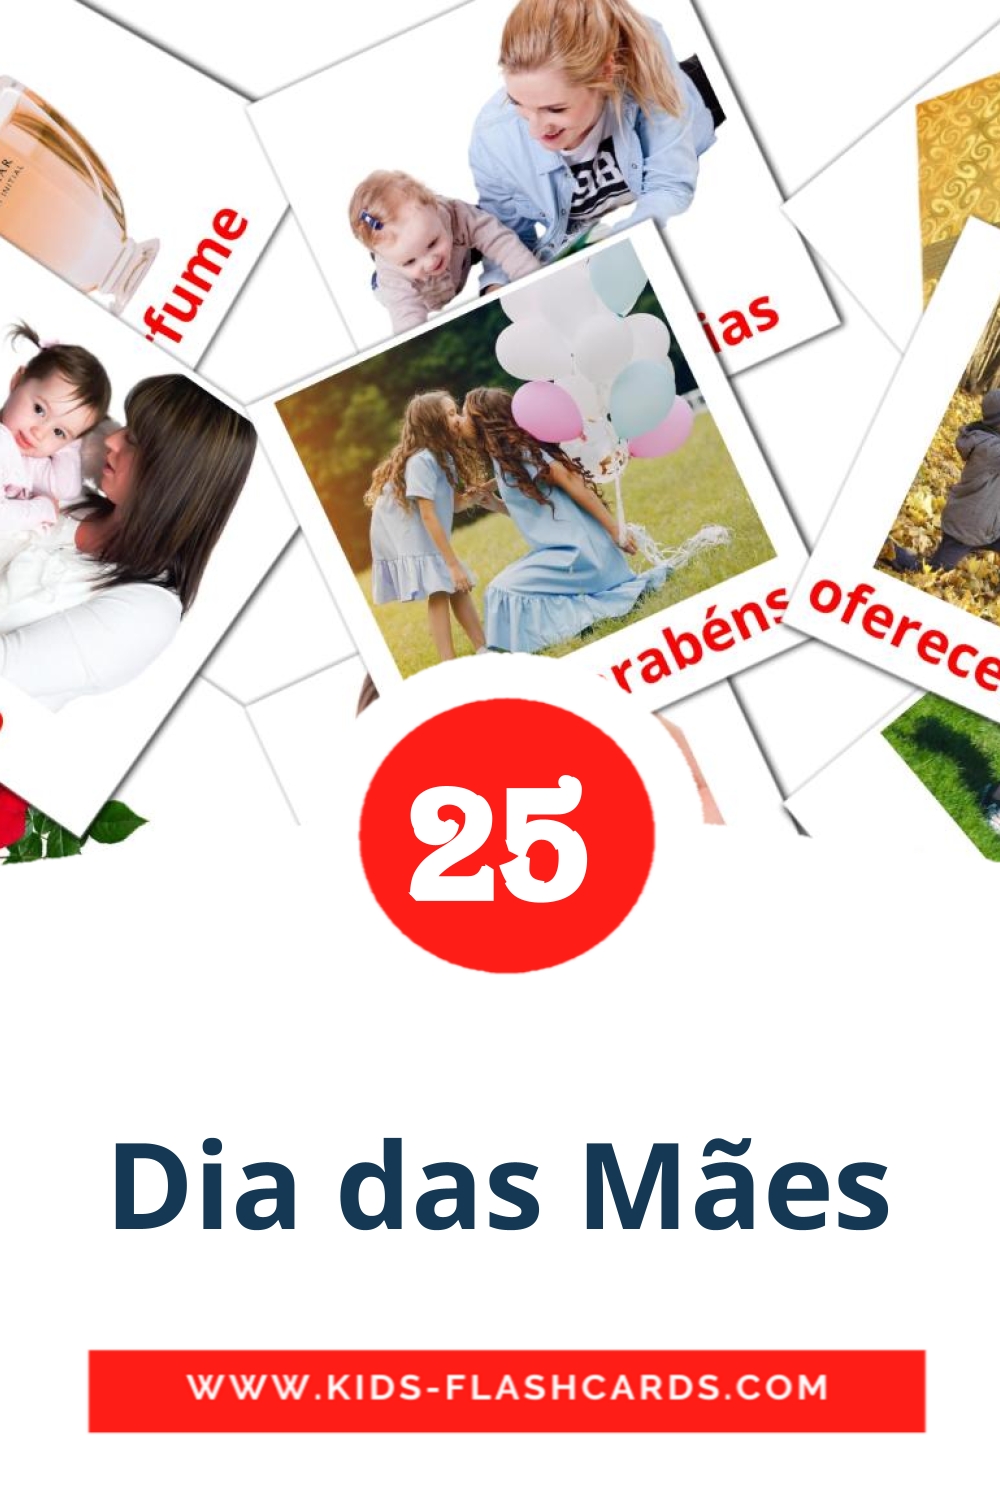 dia das mães на португальском для Детского Сада (25 карточек)